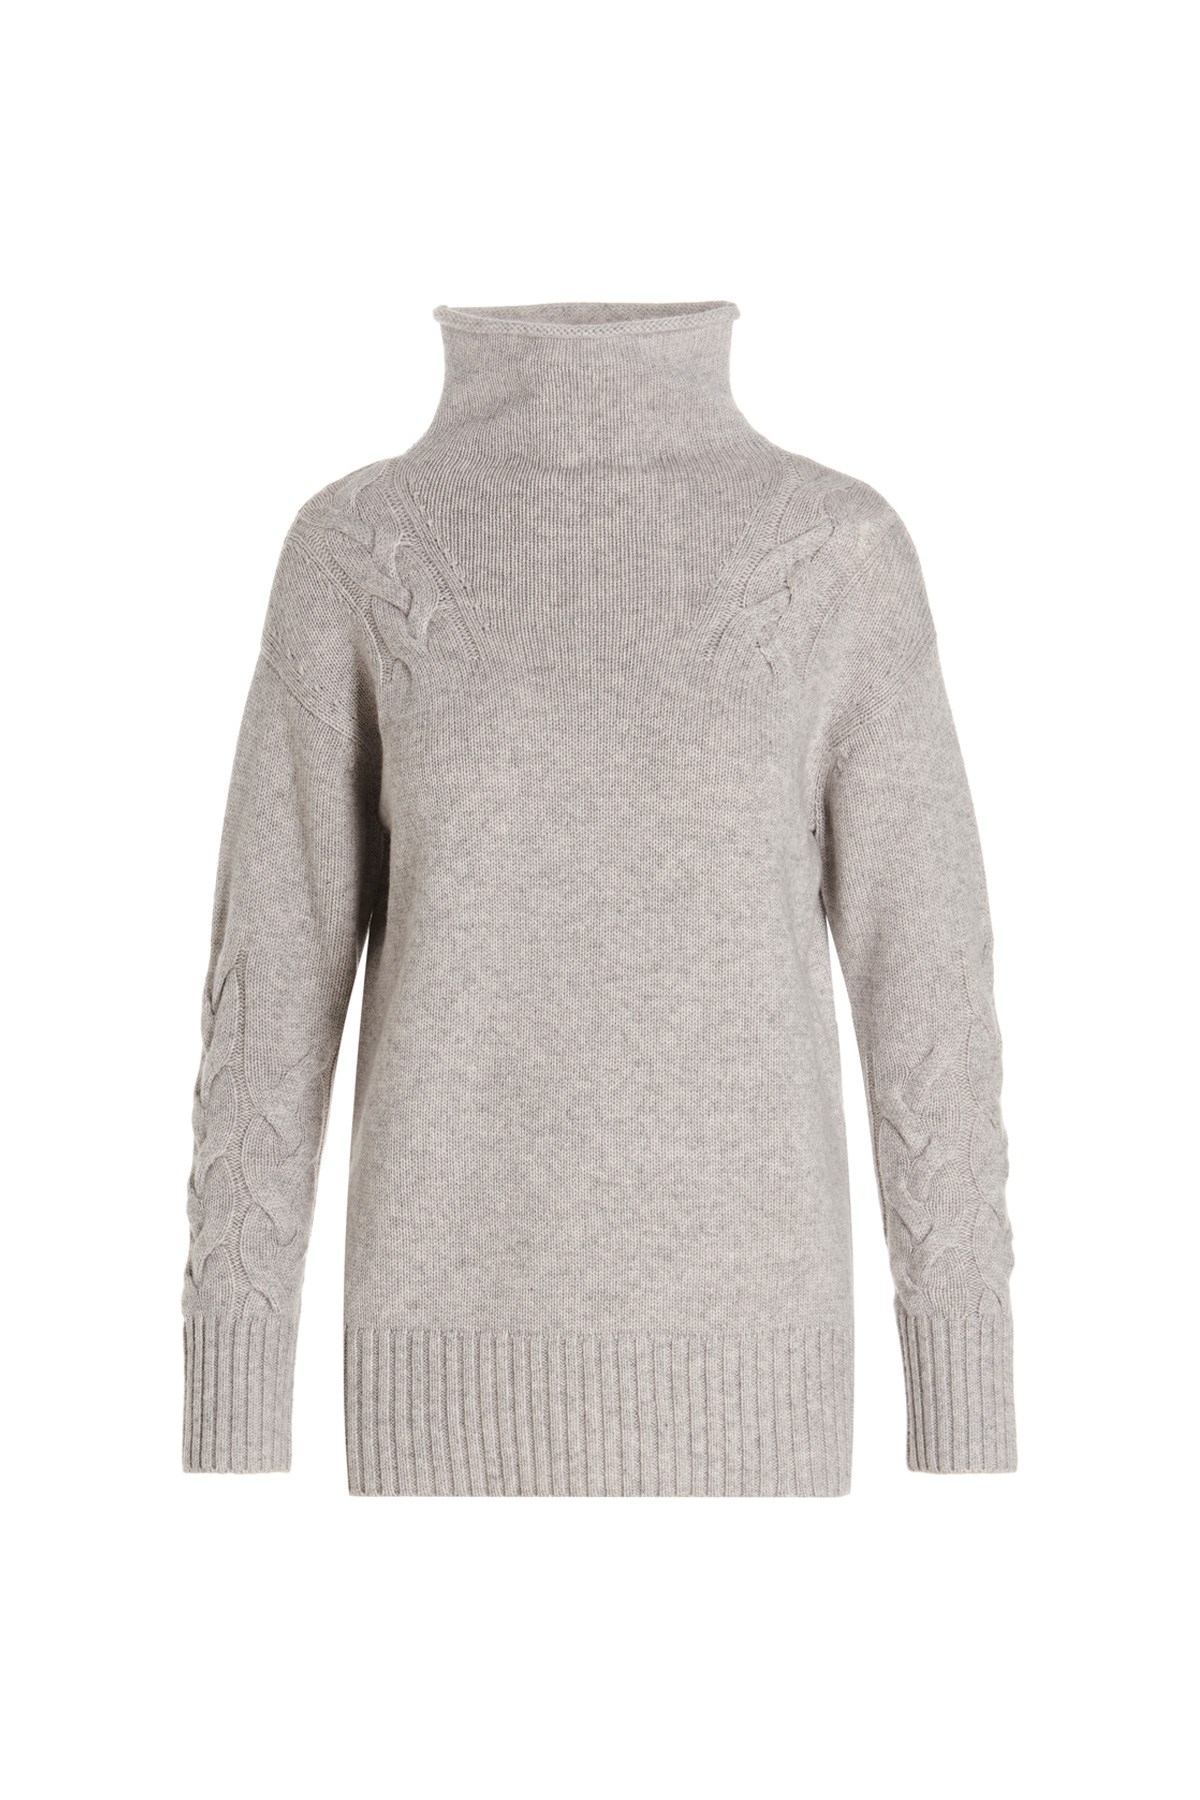 MAX MARA 'S 'Ussuri’ Sweater